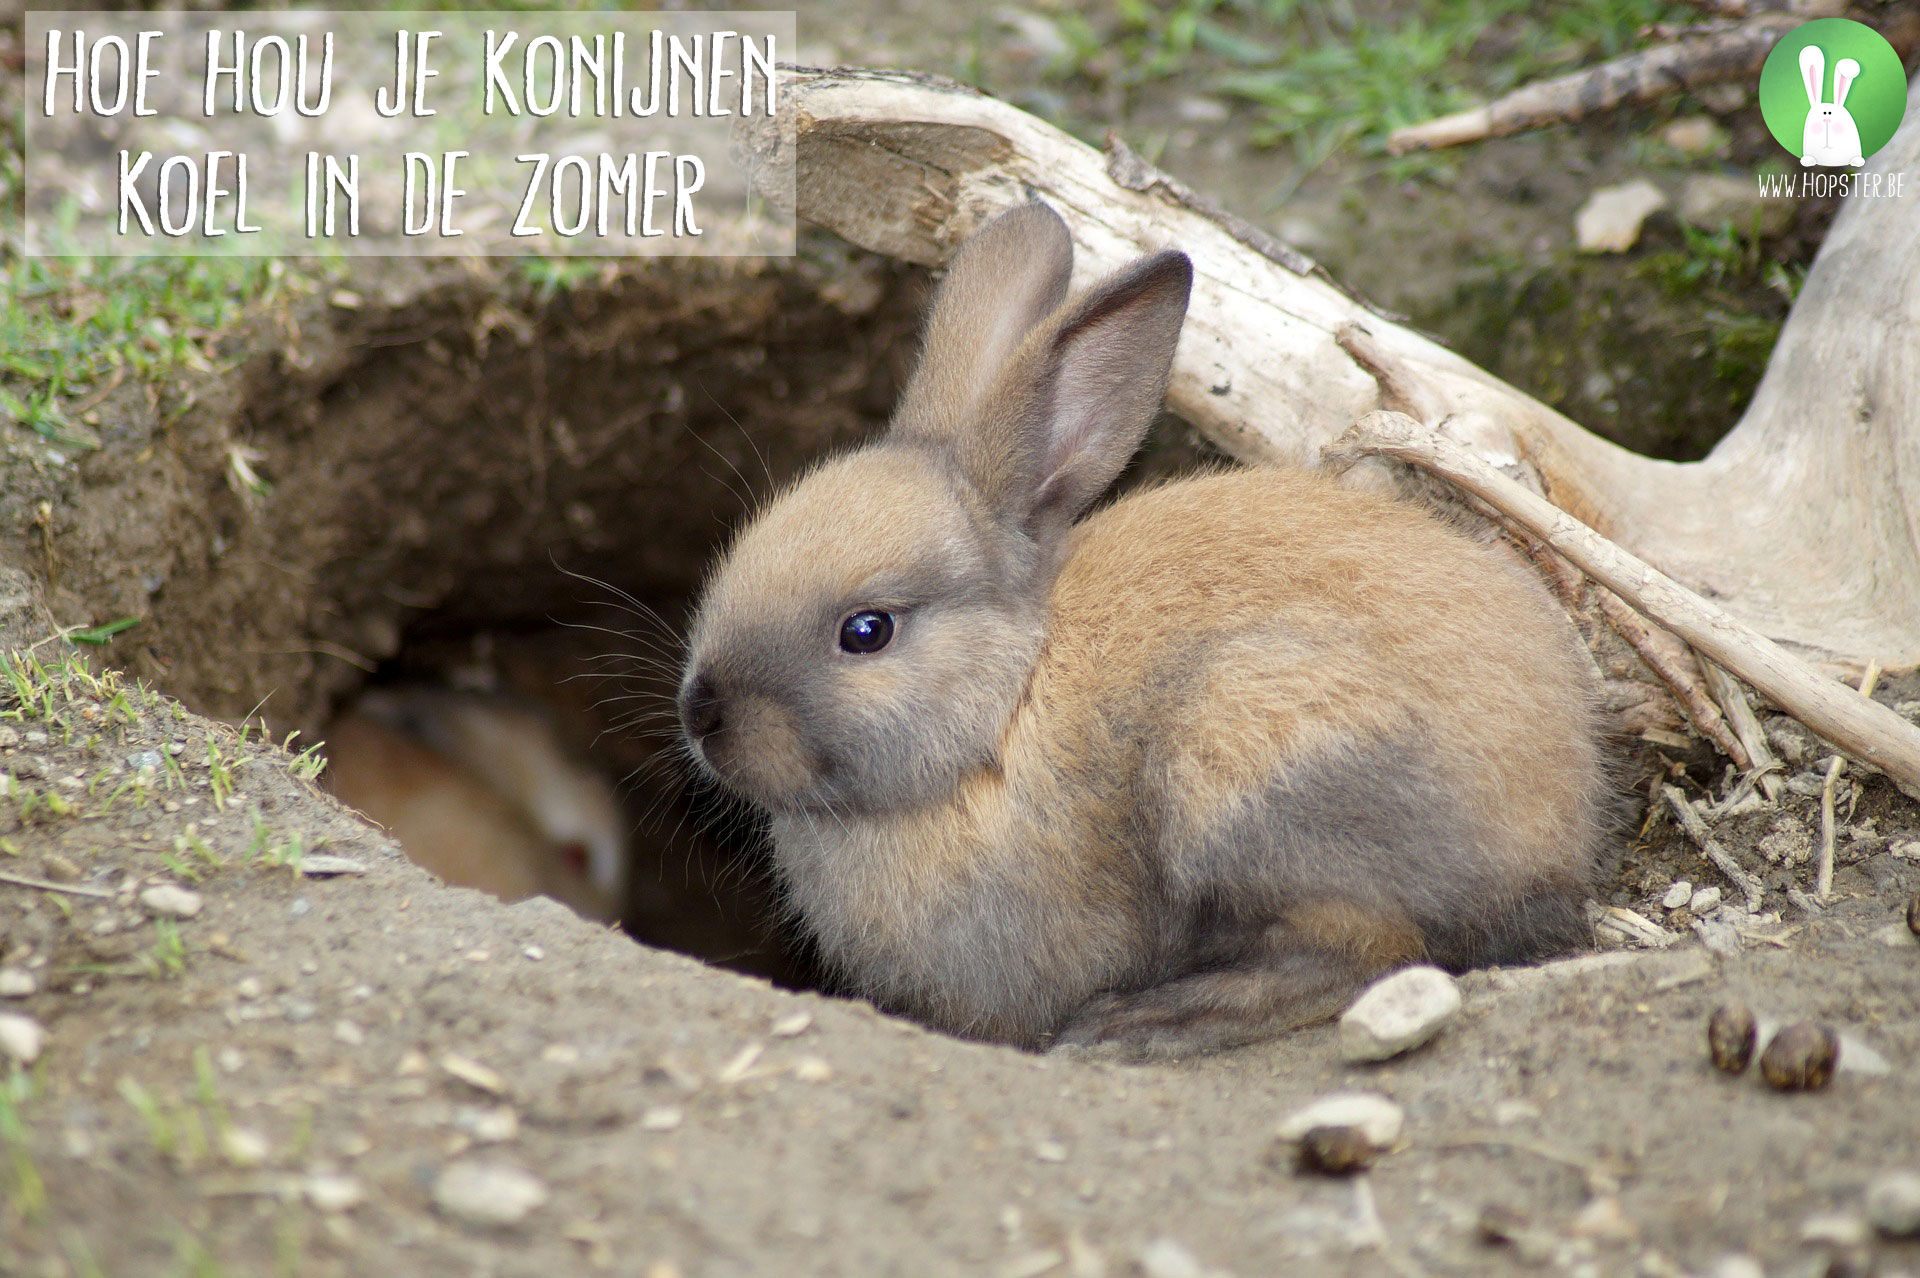 Hoe hou je konijnen de zomer Konijnenadviesbureau Hopster